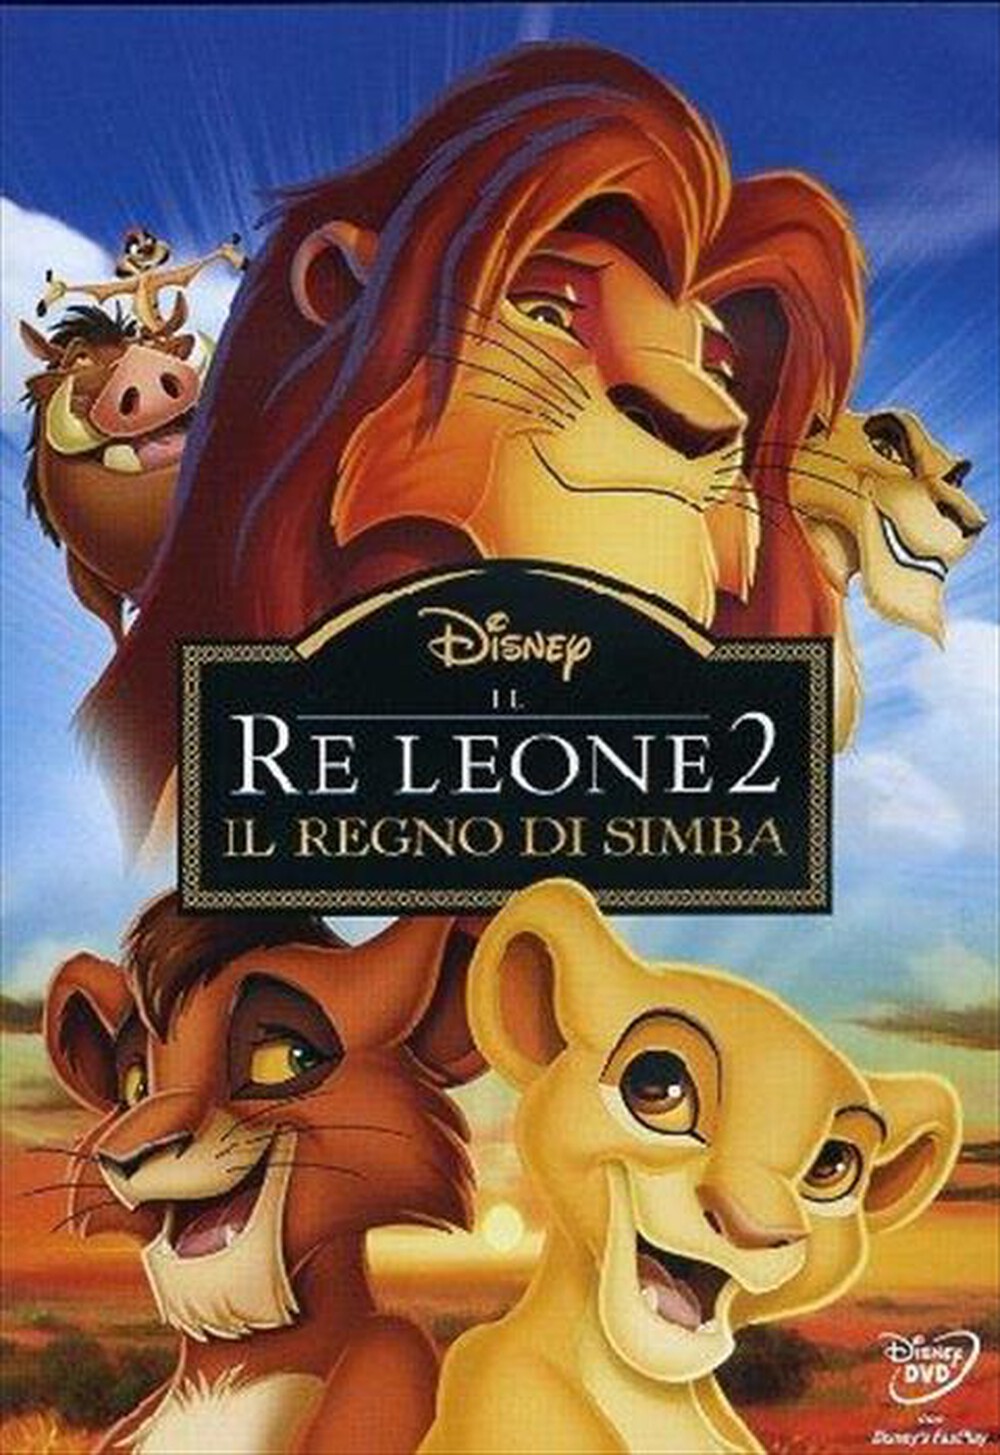 "EAGLE PICTURES - Re Leone 2 (Il) - Il Regno Di Simba"